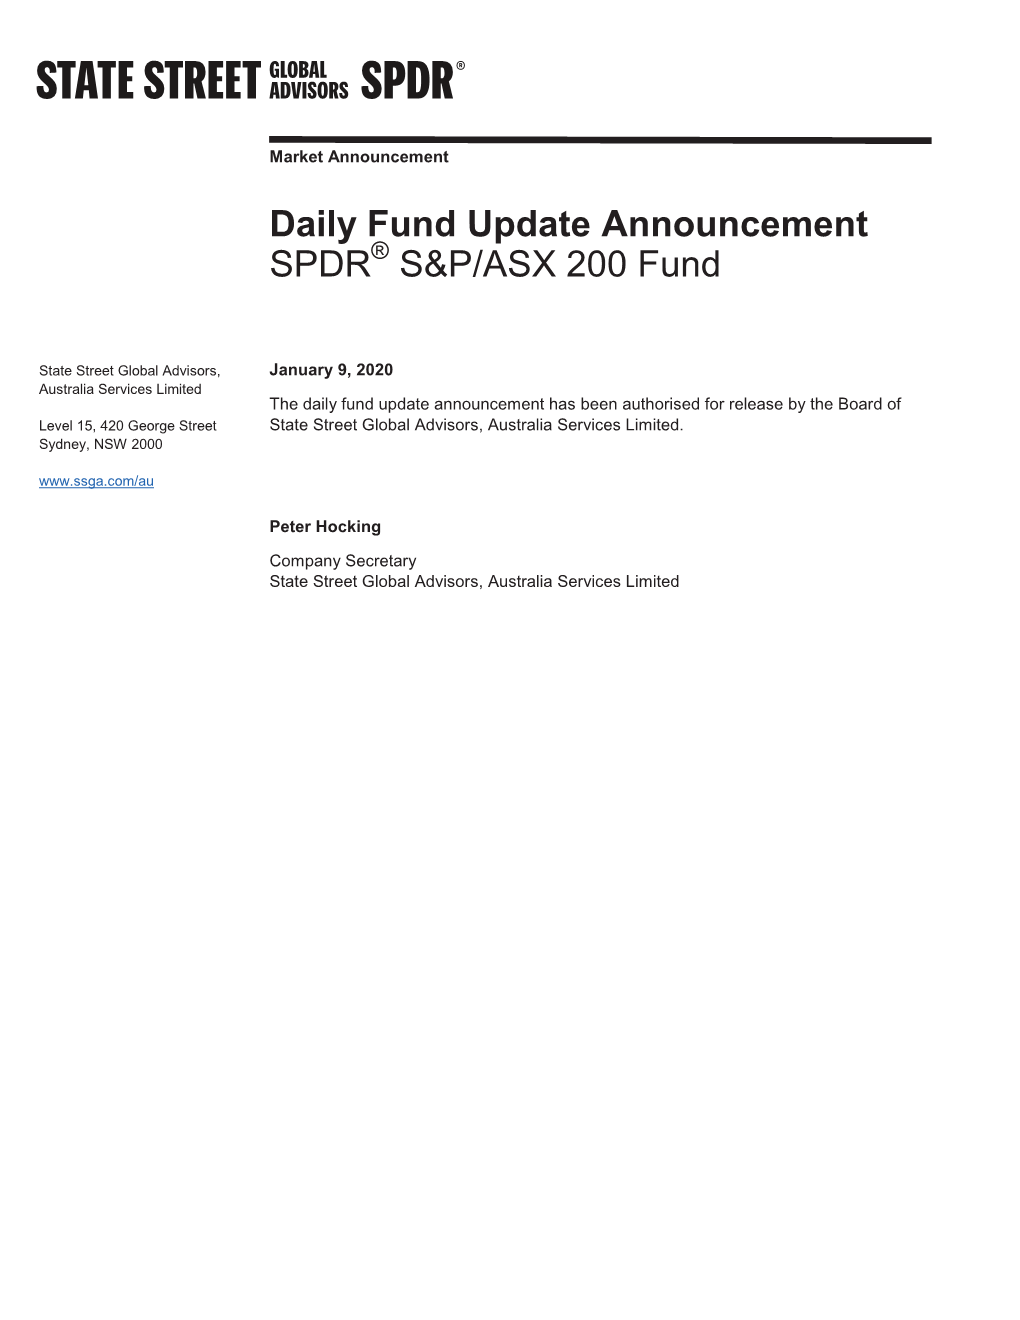 Daily Fund Update Announcement SPDR S&P/ASX 200 Fund